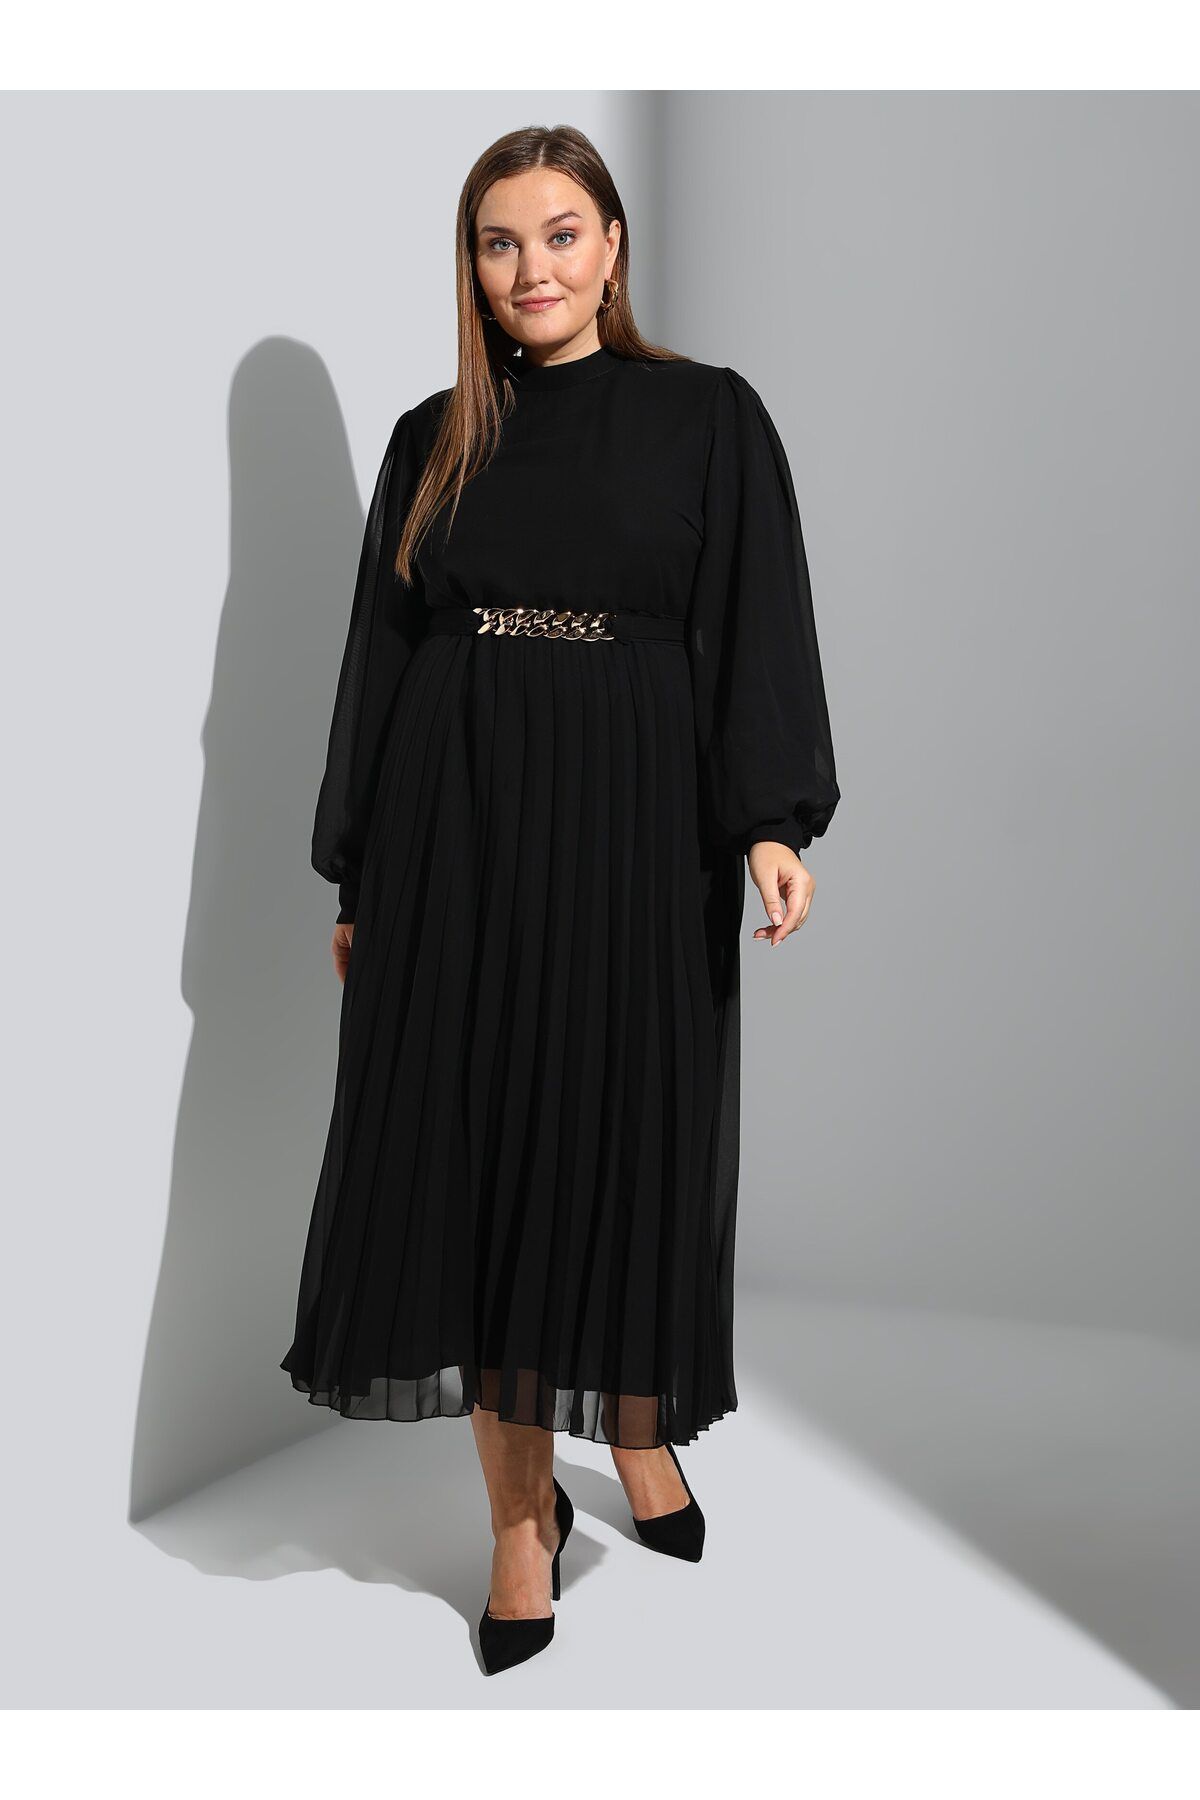 Alia Zincir Kemer/ Plise Detaylı Büyük Beden Şifon Abiye Elbise - Siyah - Alia